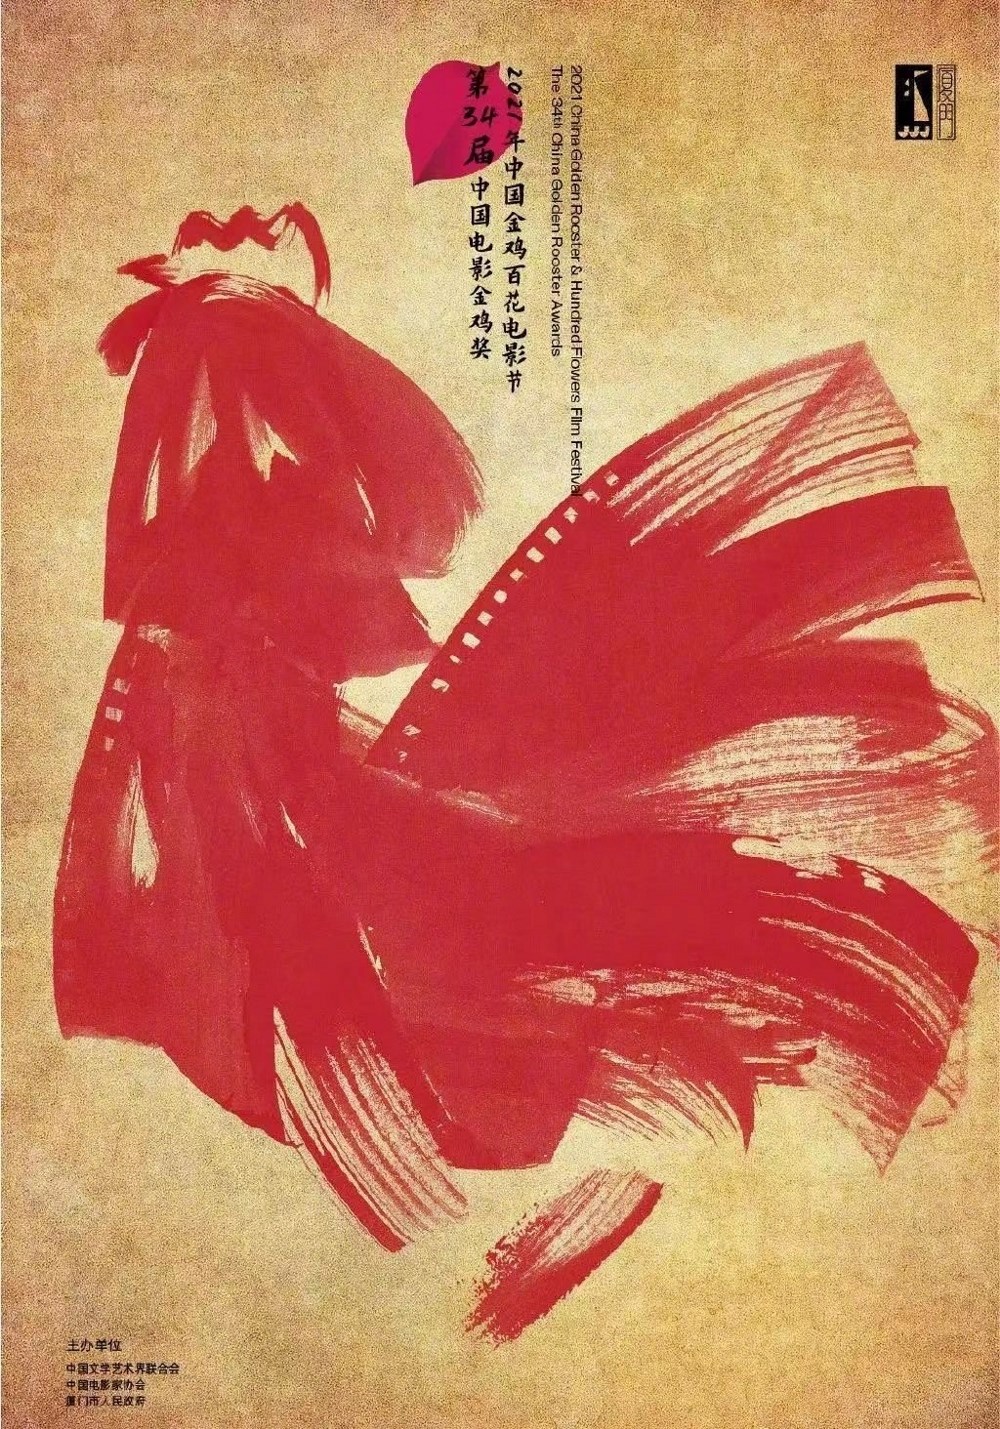 第35届中国电影金鸡奖发布主视觉海报